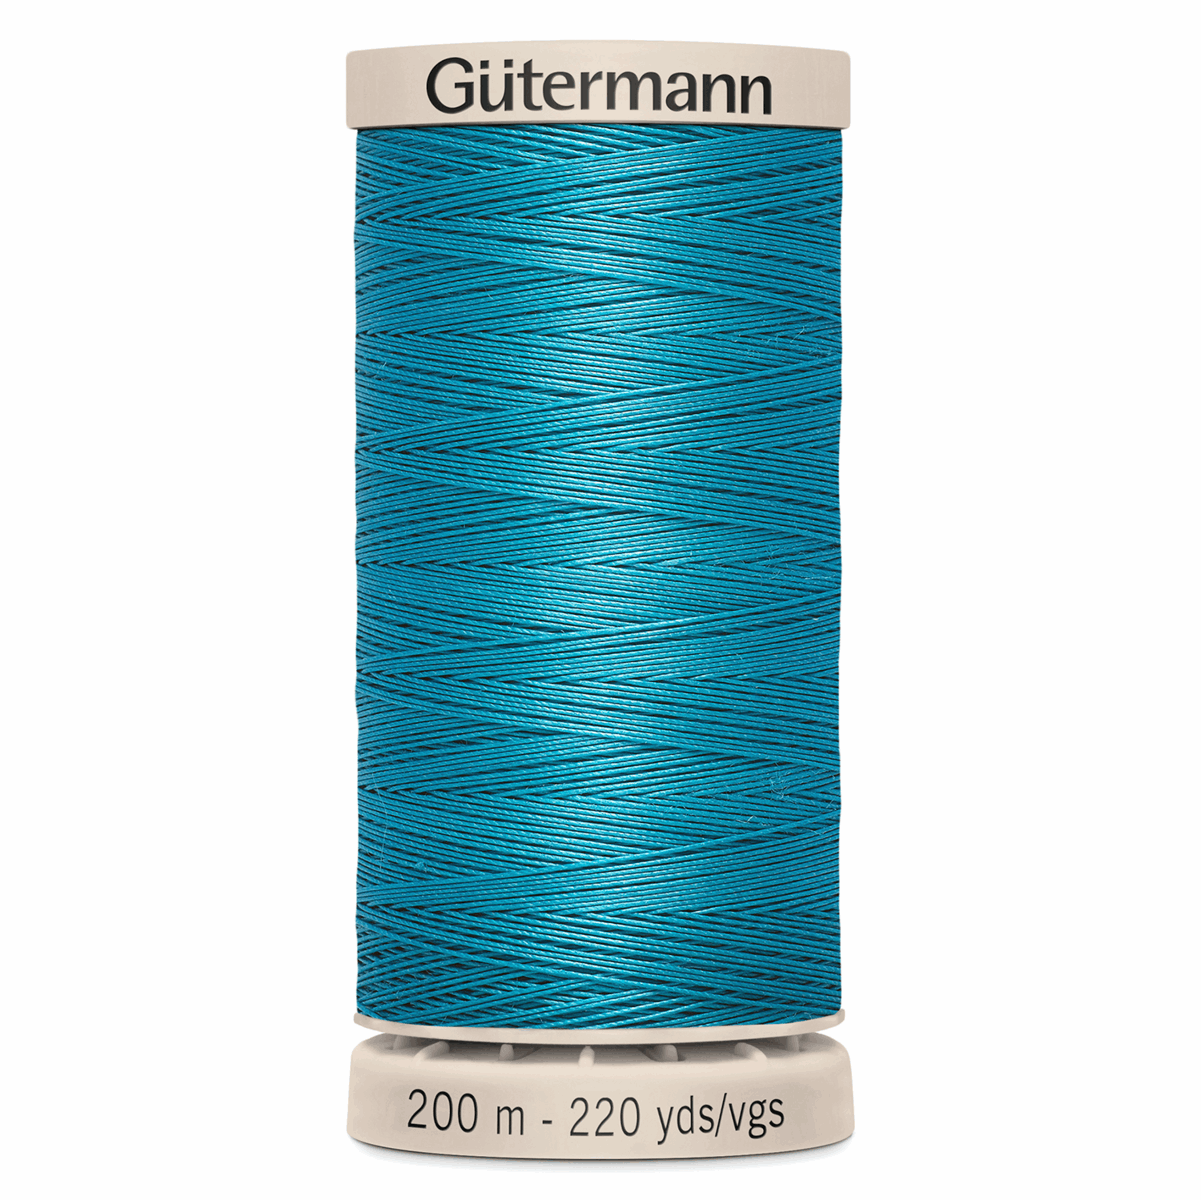 Gutermann Quilting Thread 200m - Colour 7235